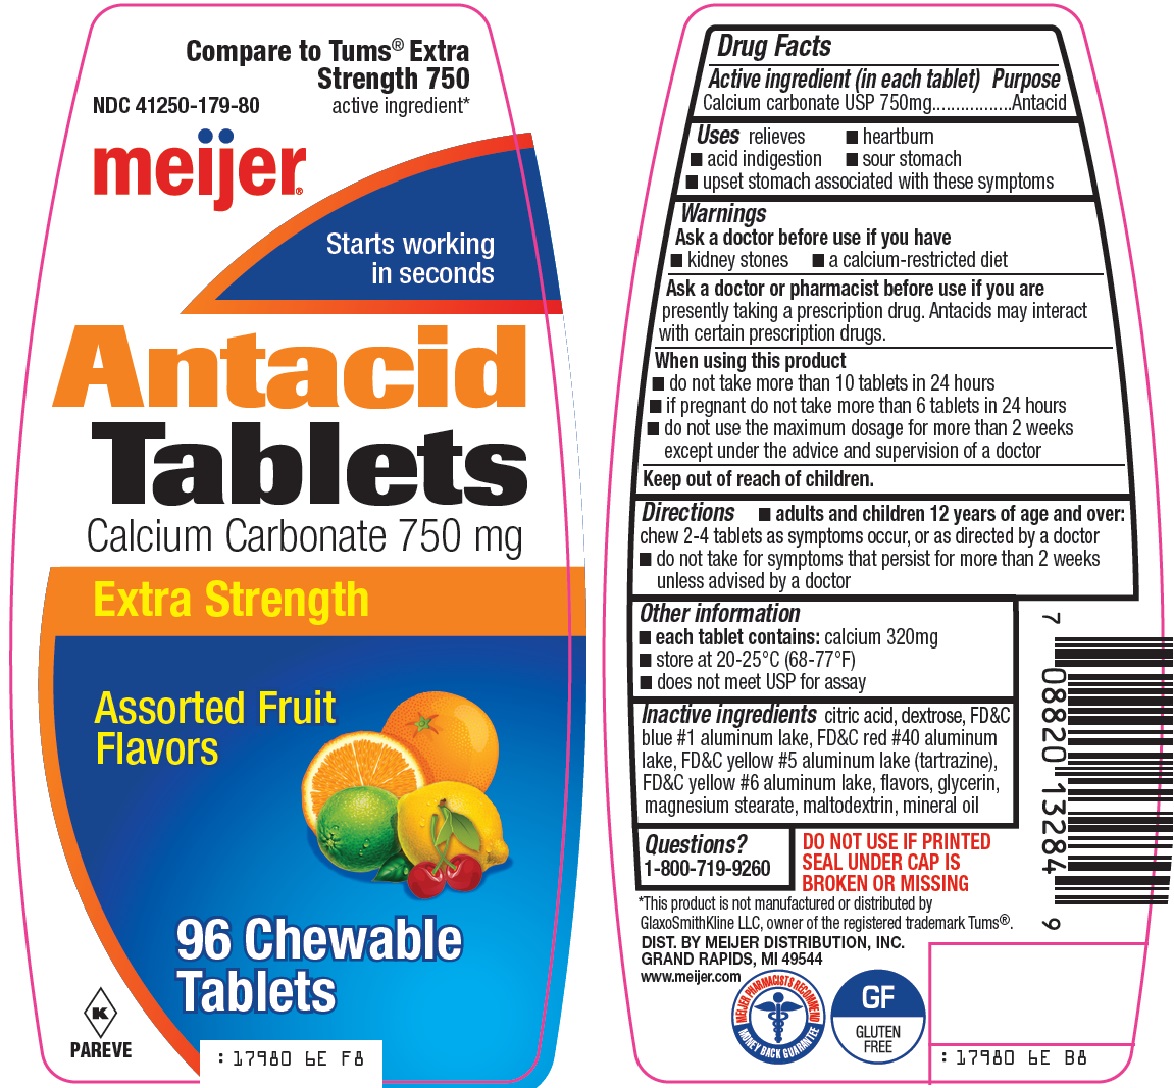 antacid tablets image